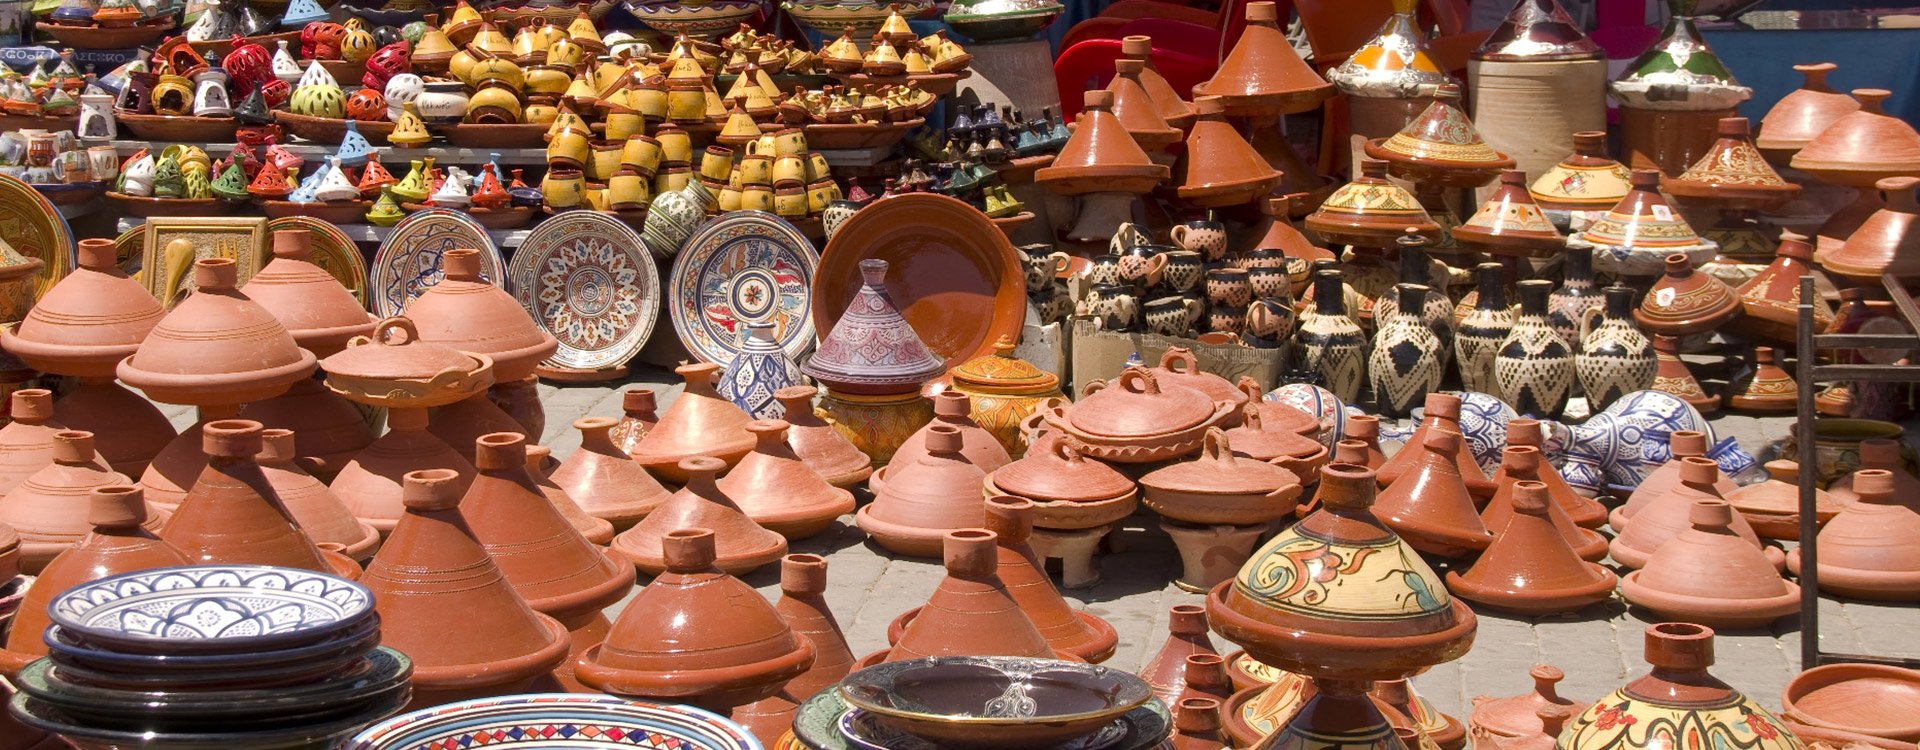 Morocco_Marrakech_Souk Spices